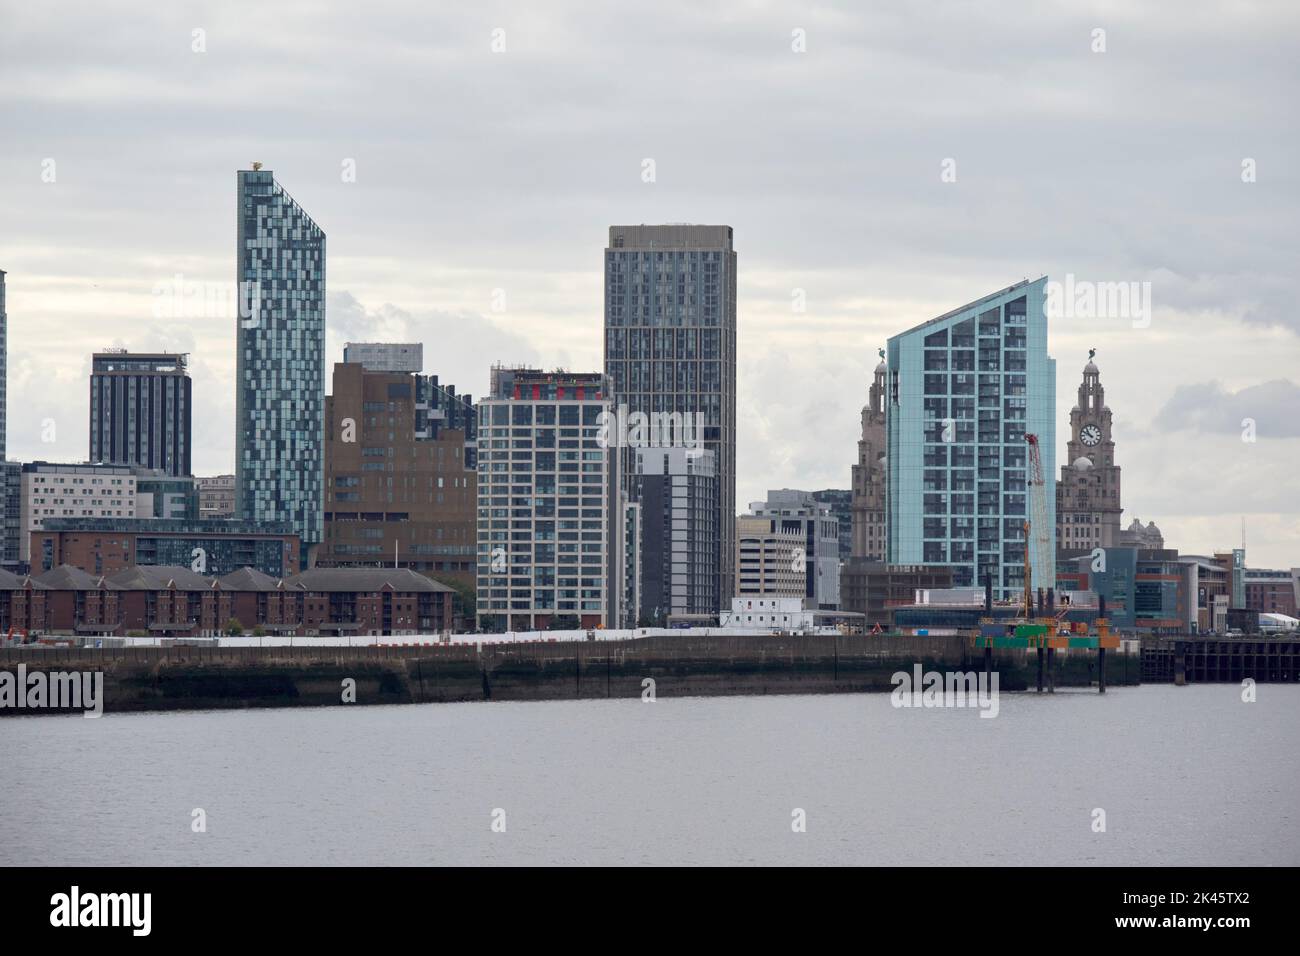 Nouveaux bâtiments gratte-ciel et immeubles faisant partie du développement des eaux de liverpool dans le quartier de vauxhall au bord de la rivière du centre-ville de Liverpool Banque D'Images